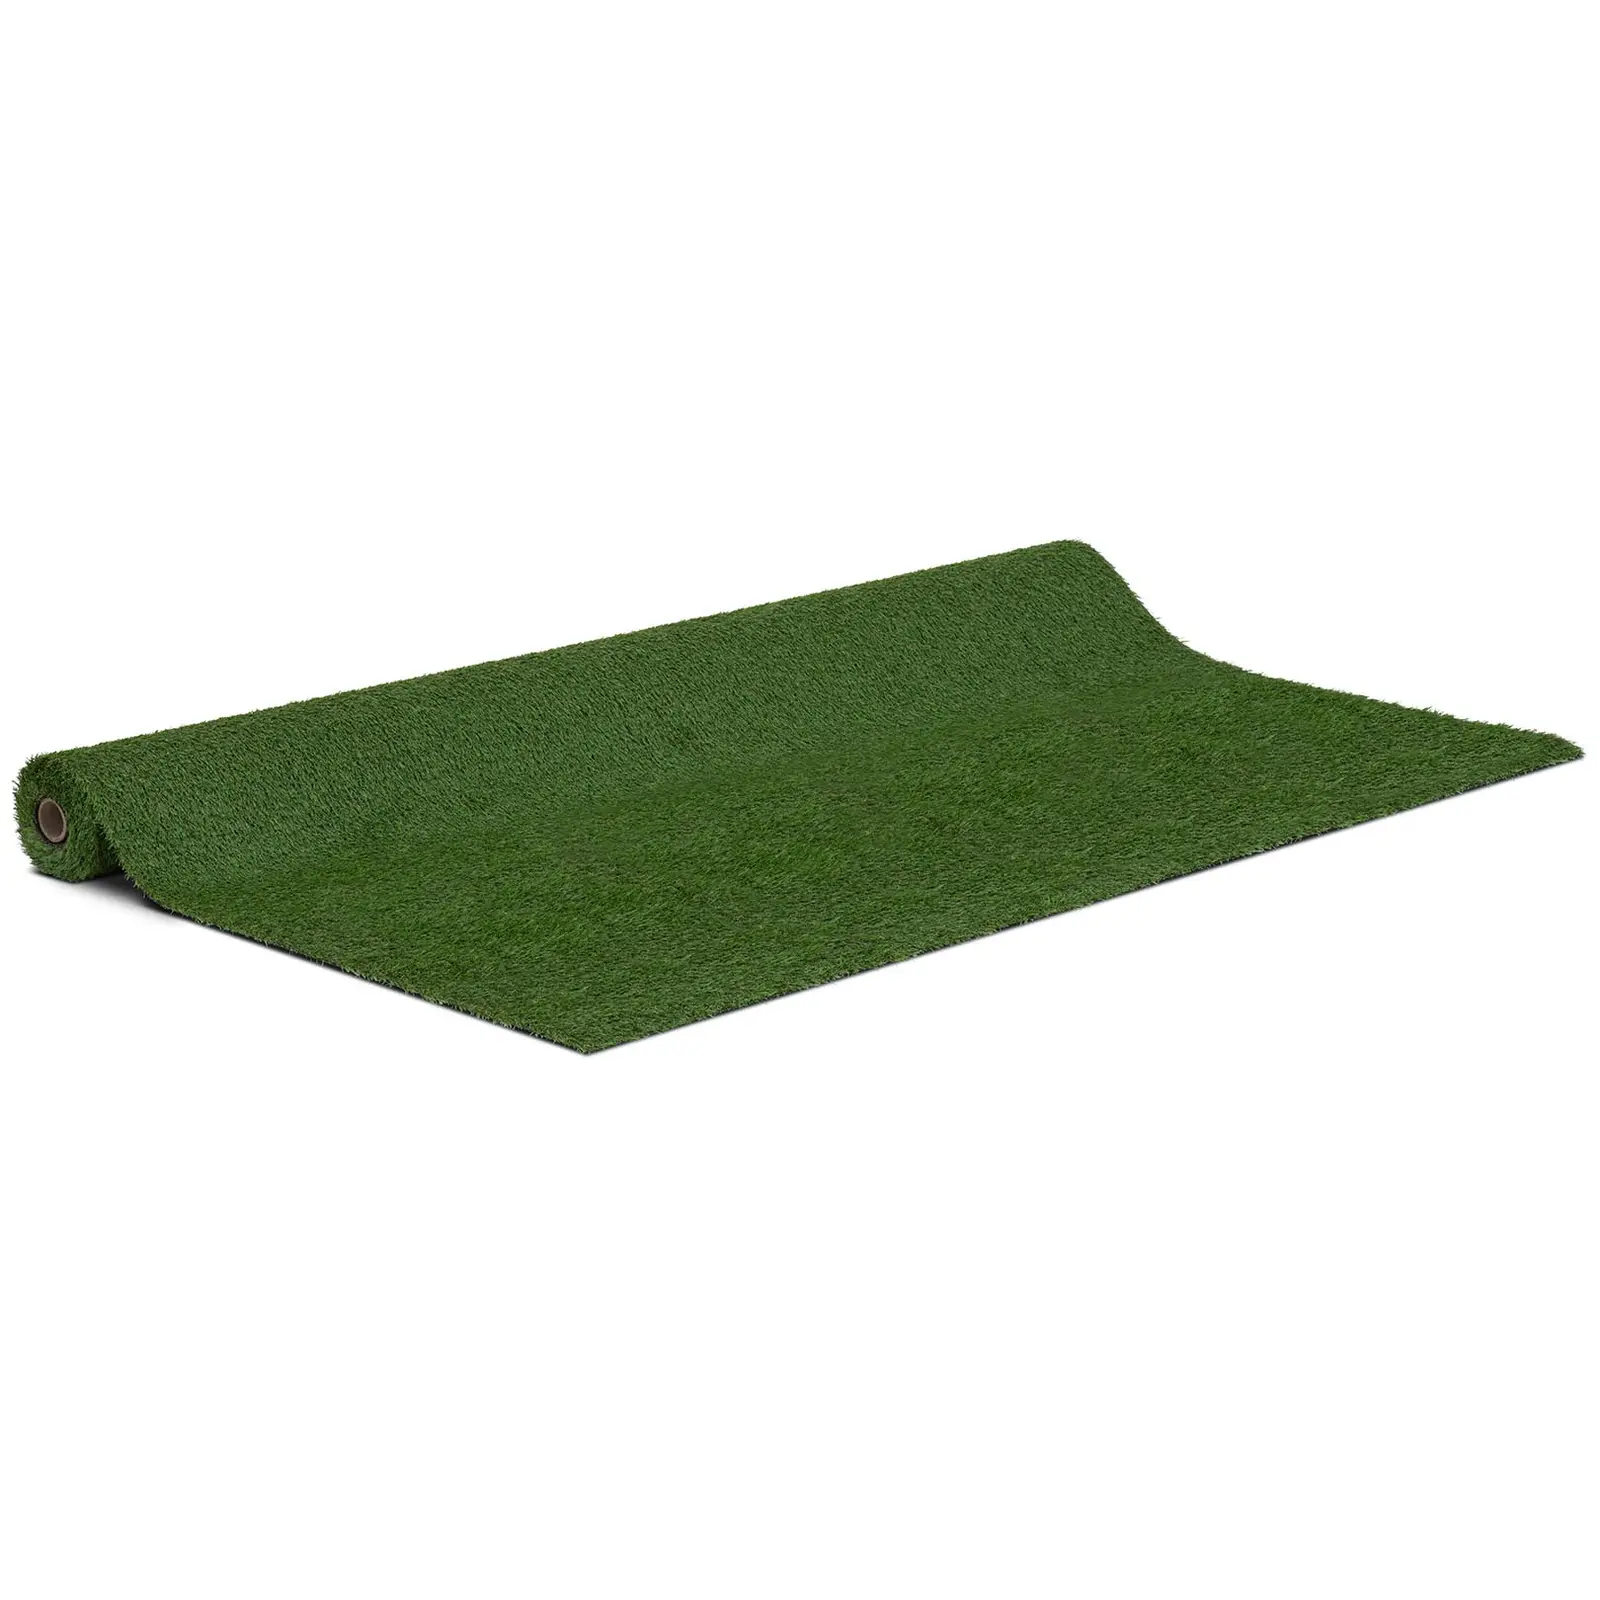 Umelý trávnik - 200 x 400 cm - výška: 20 mm - hustota stehov: 13/10 cm - odolný proti UV žiareniu